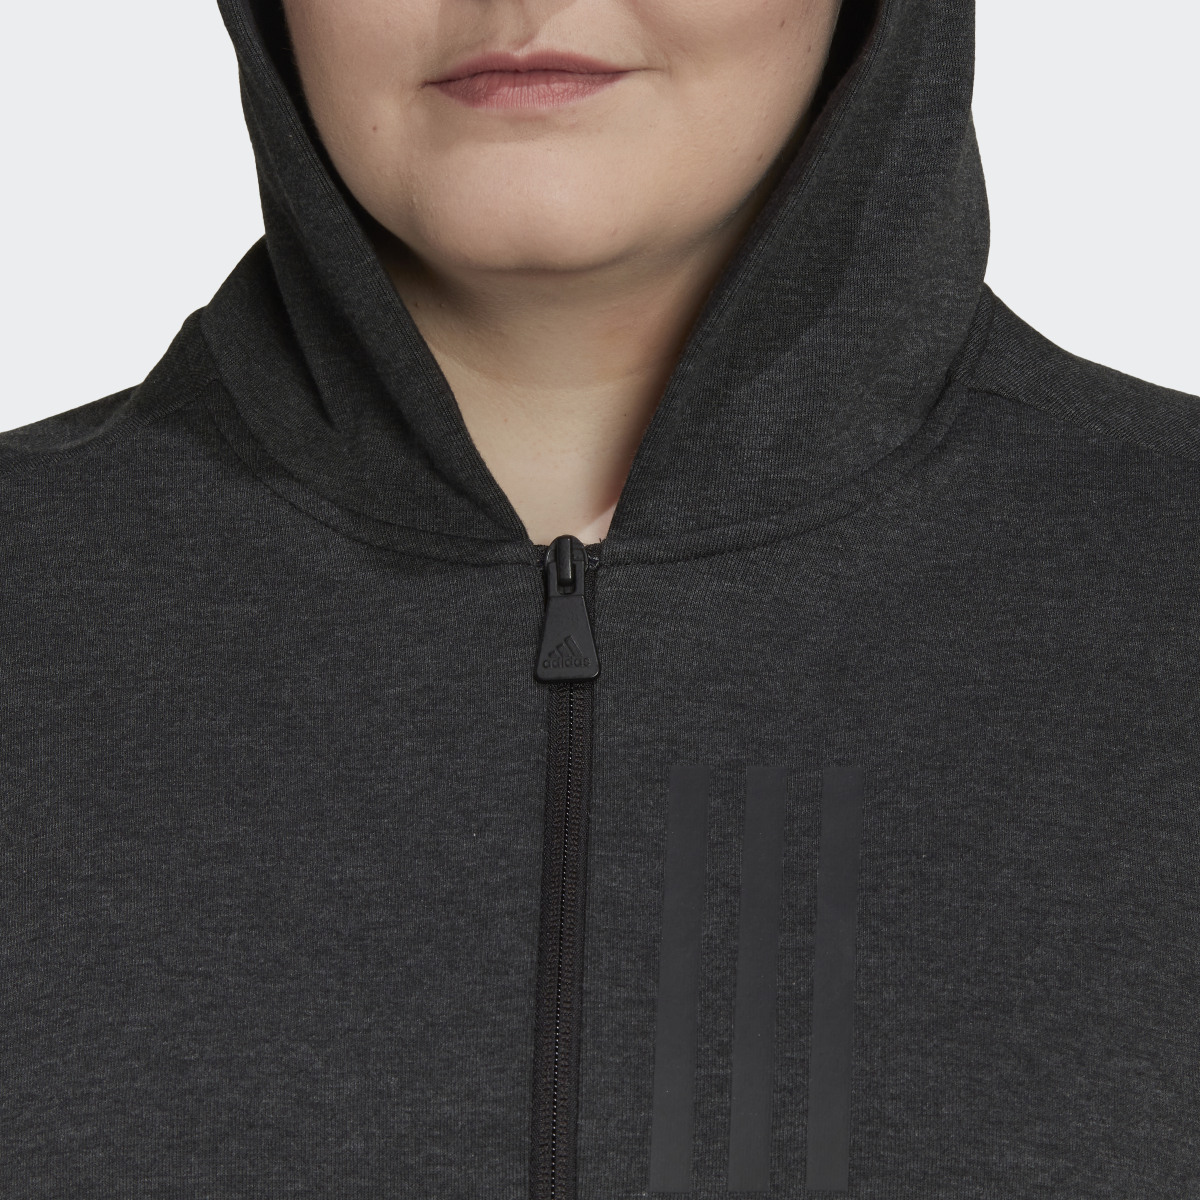 Adidas Mission Victory Slim Fit Full-Zip Hoodie (Plus Size). 6